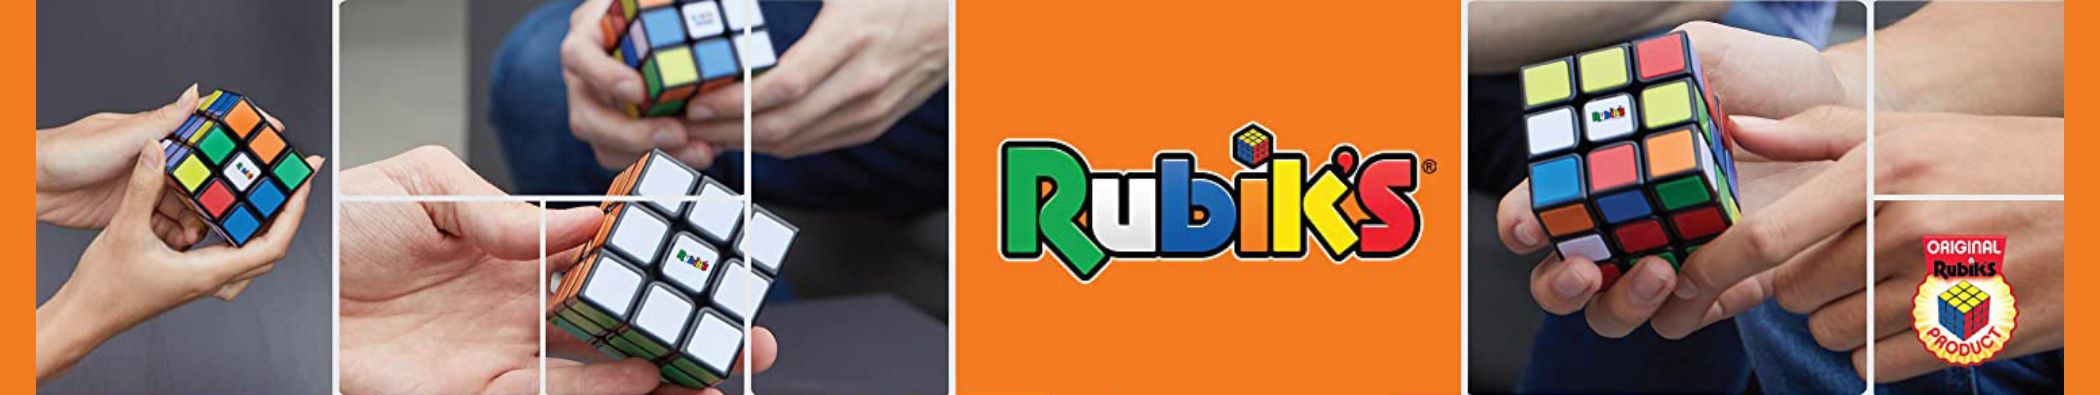 Juguetes Rubik's